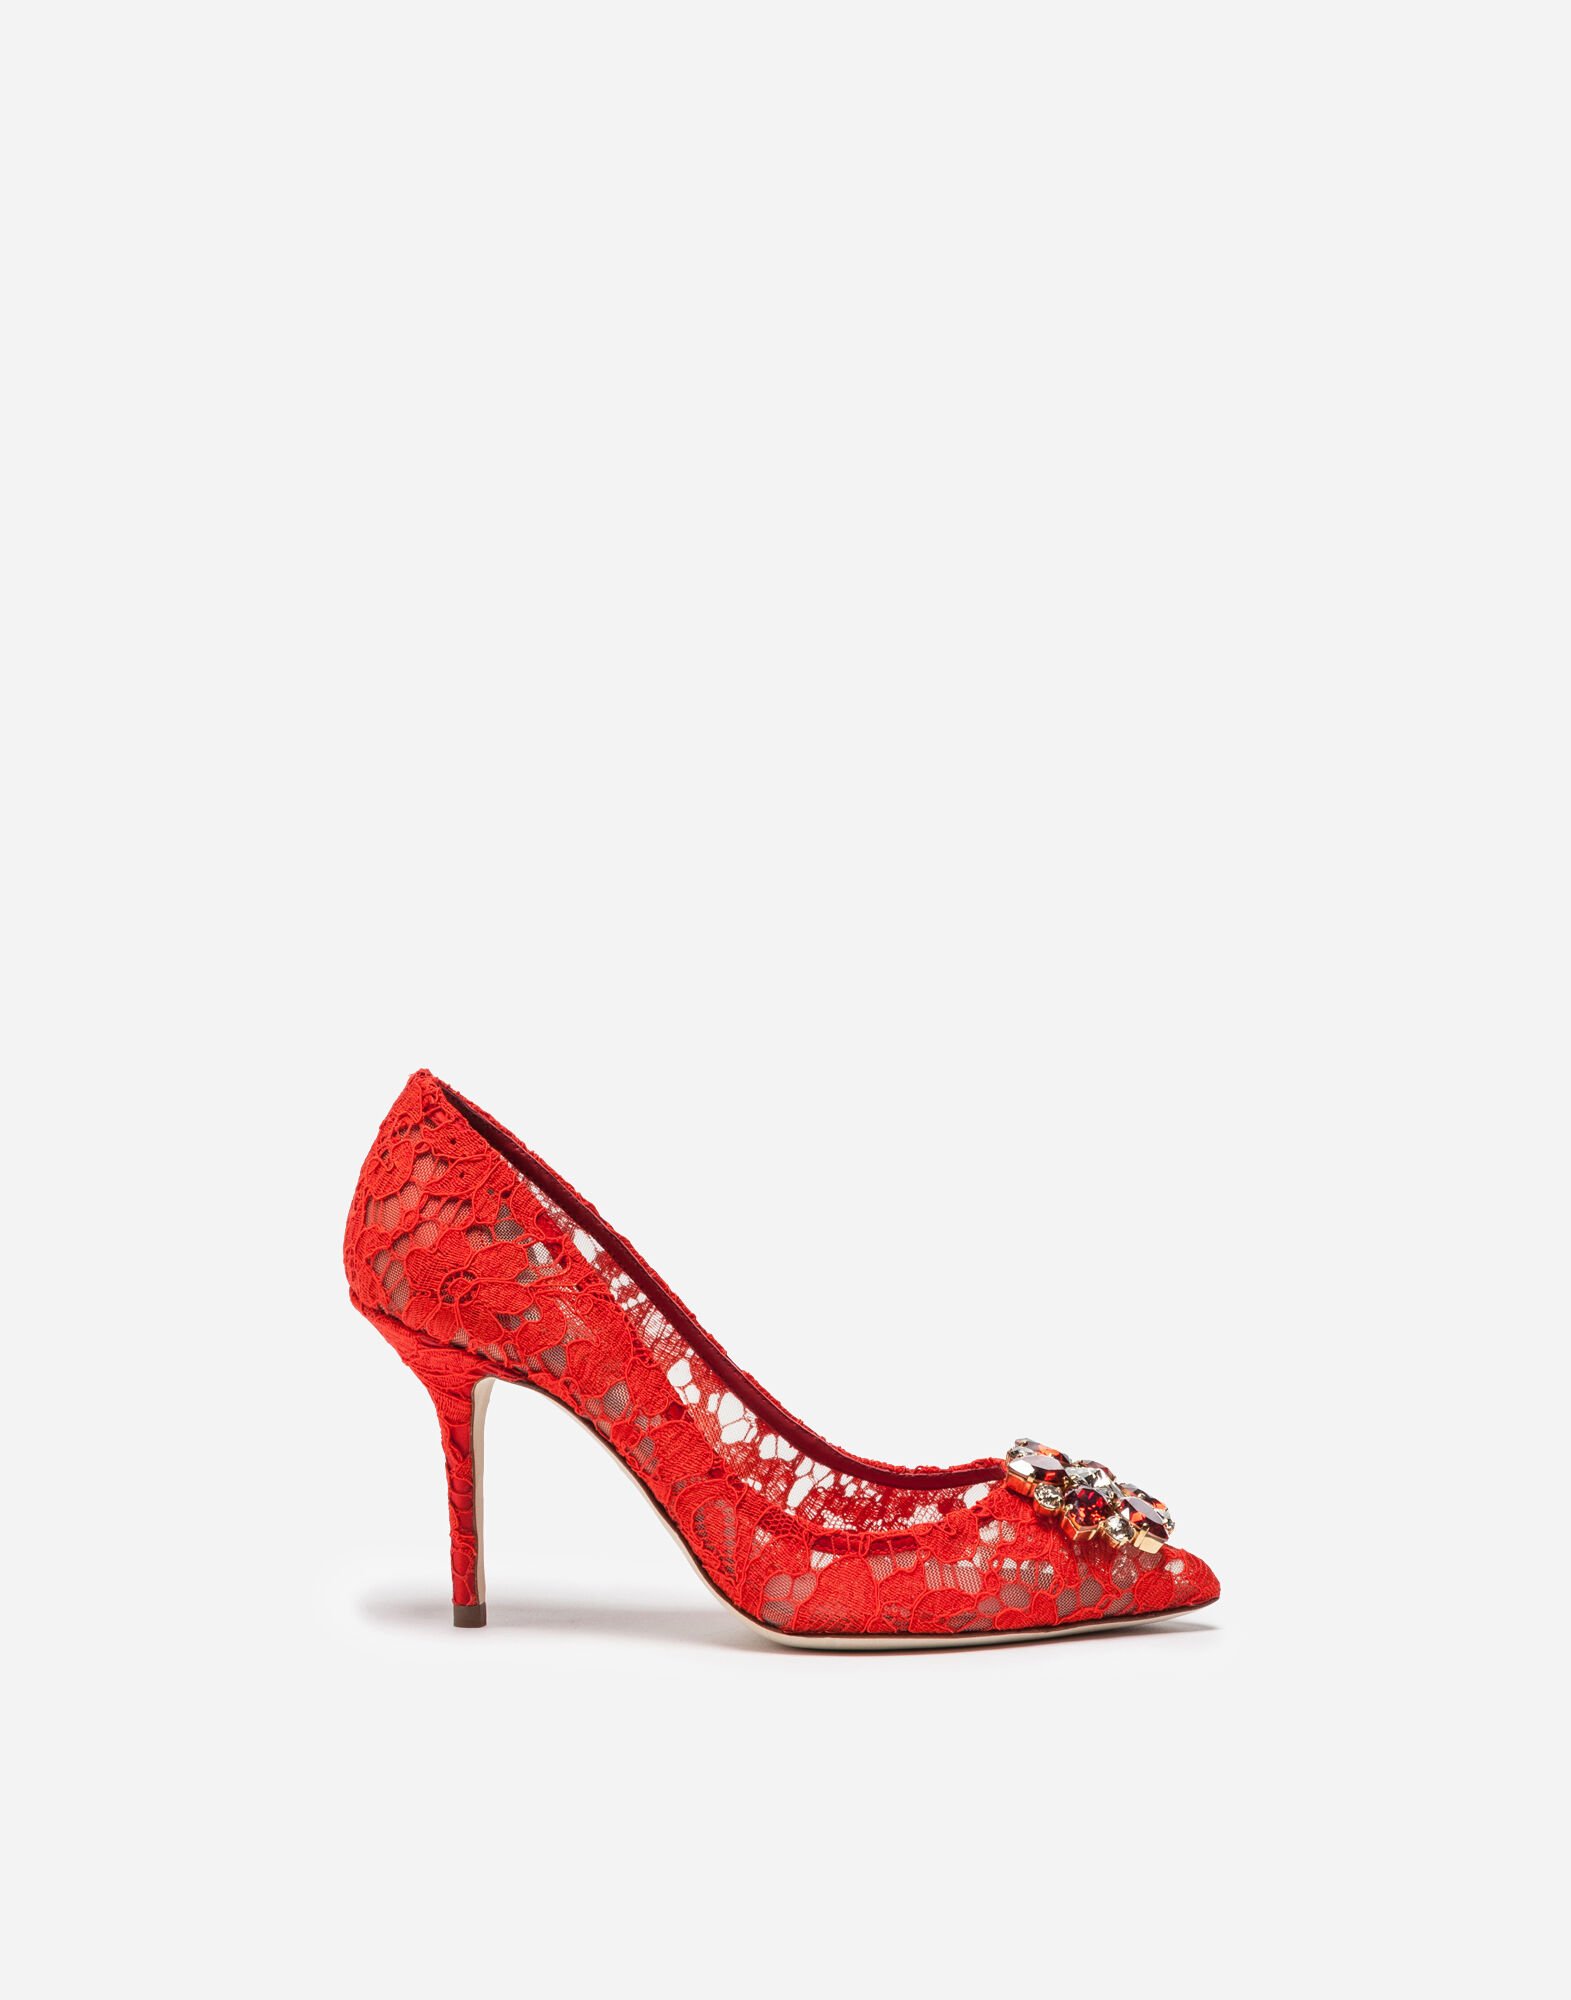 Dolce & Gabbana Zapatos escotados de encaje Taormina con cristales Blanco/Rosa CK1791AX589